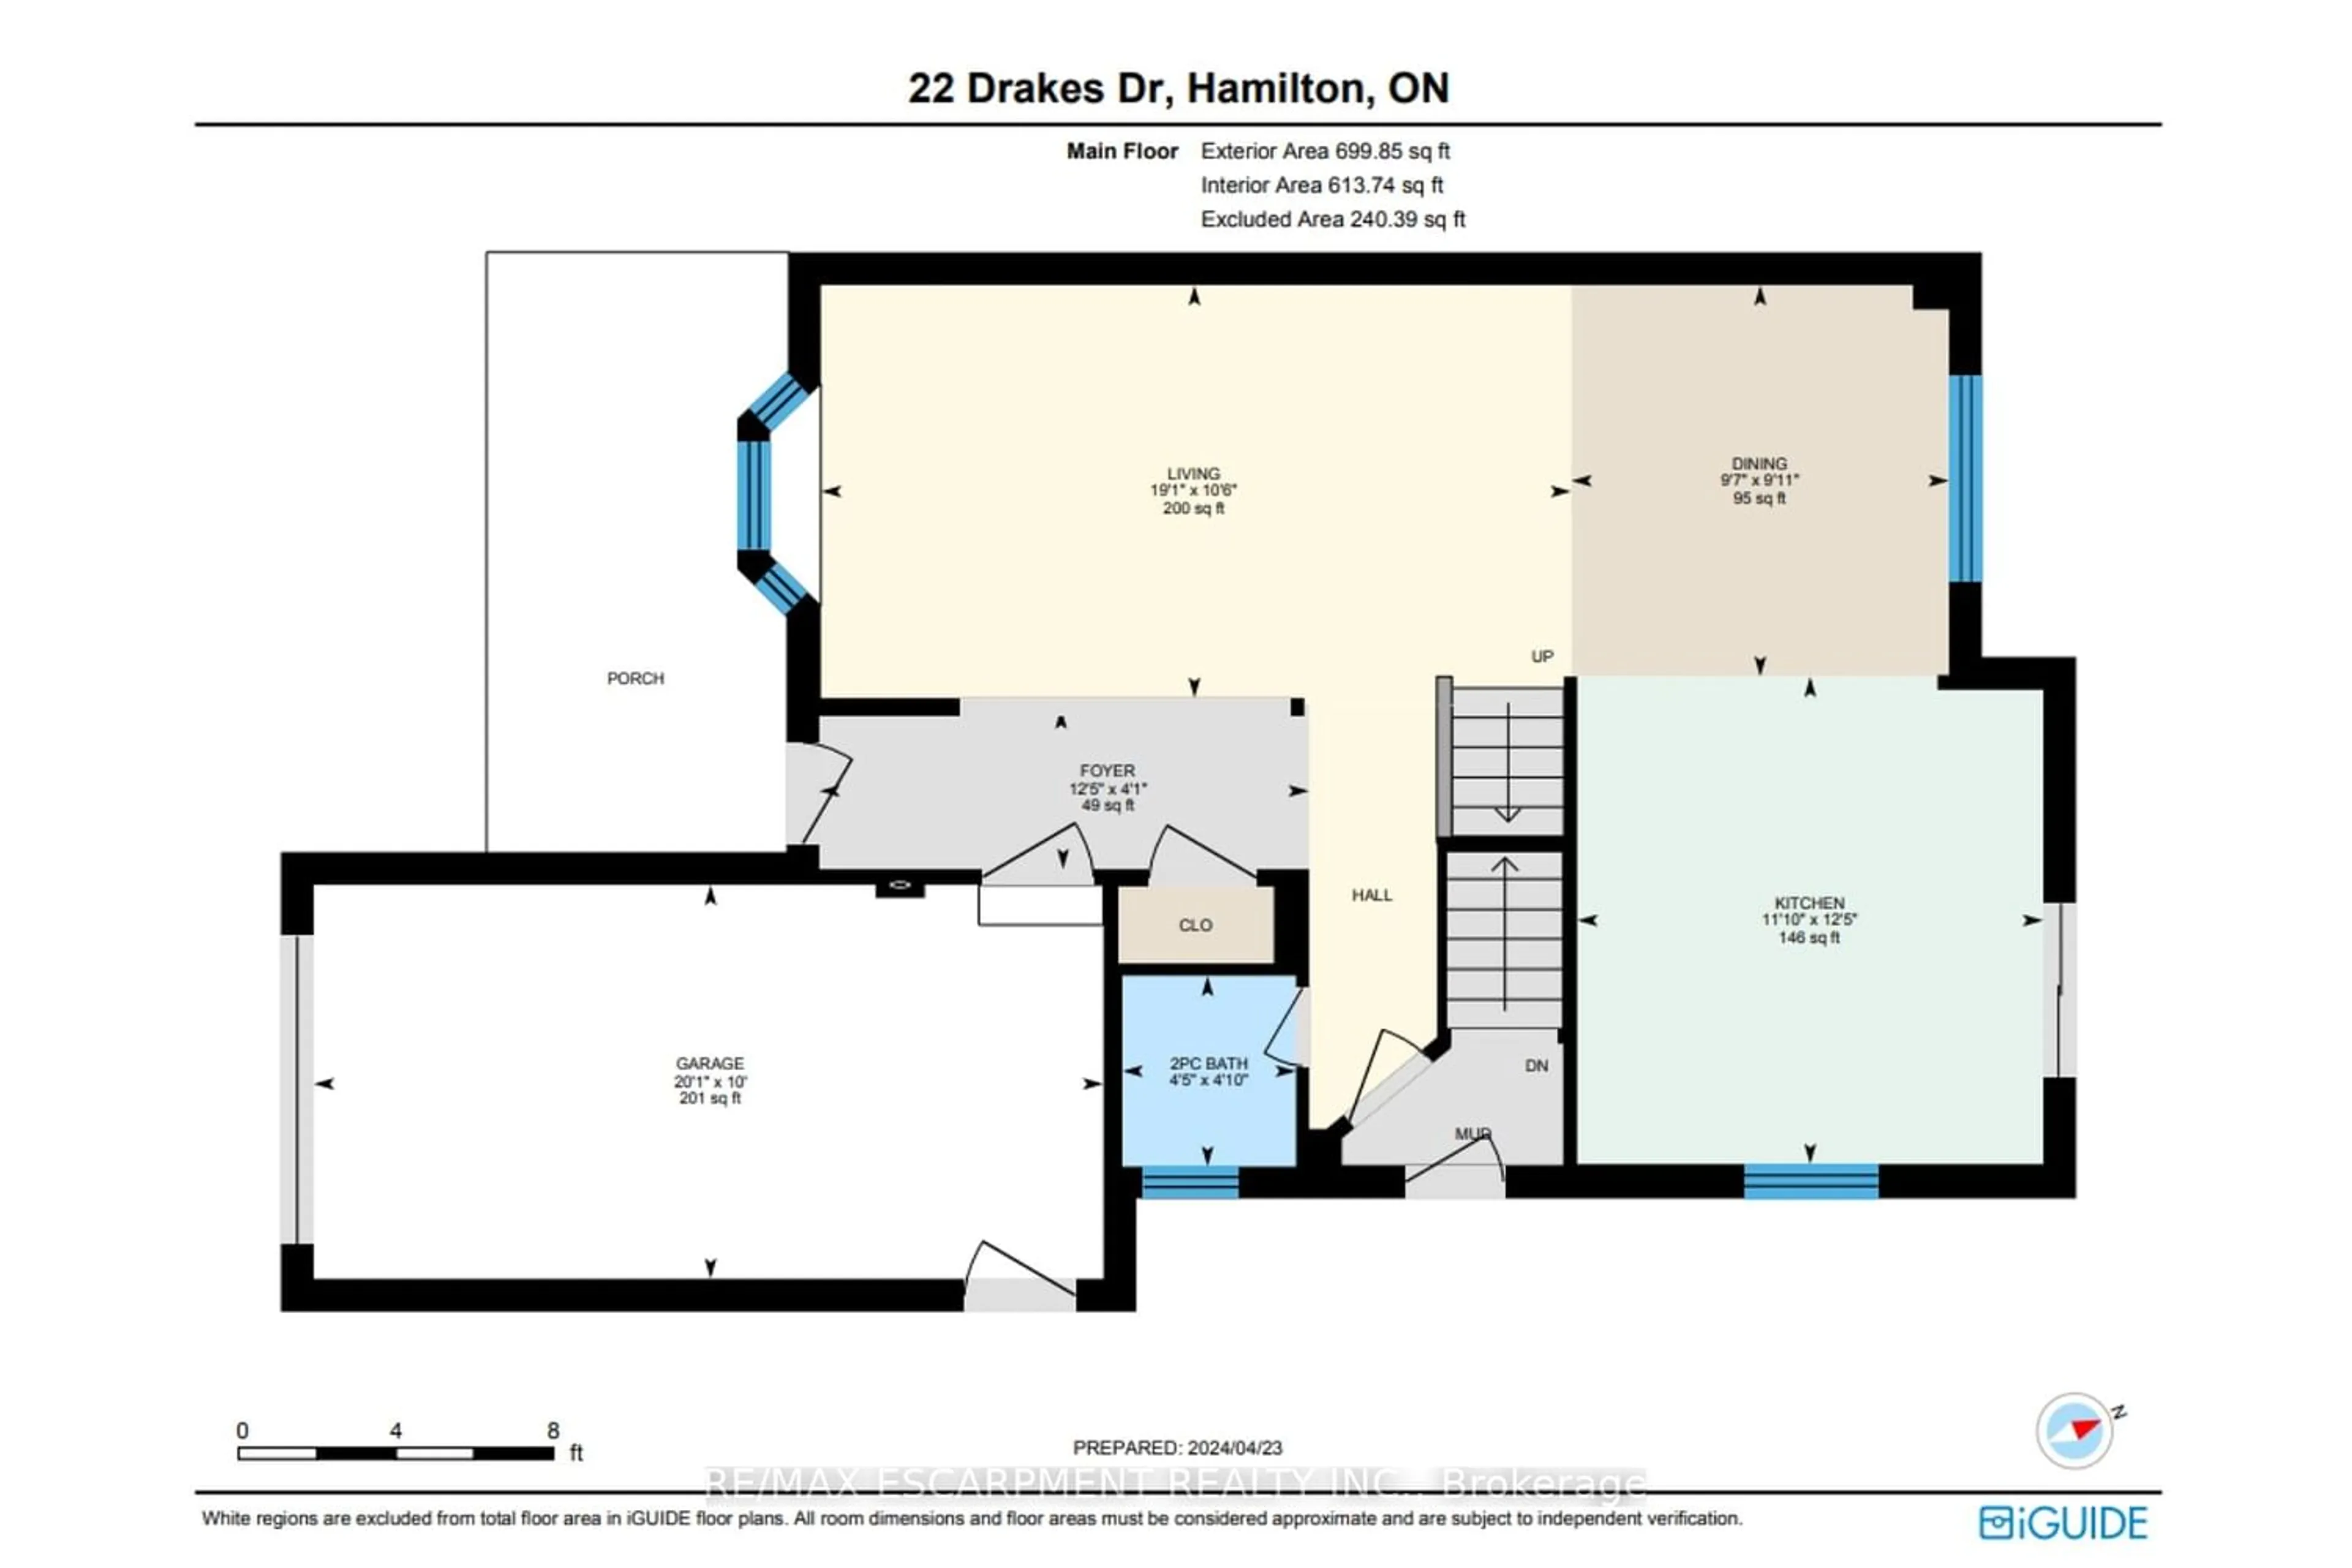 Floor plan for 22 Drakes Dr, Hamilton Ontario L8E 4G5